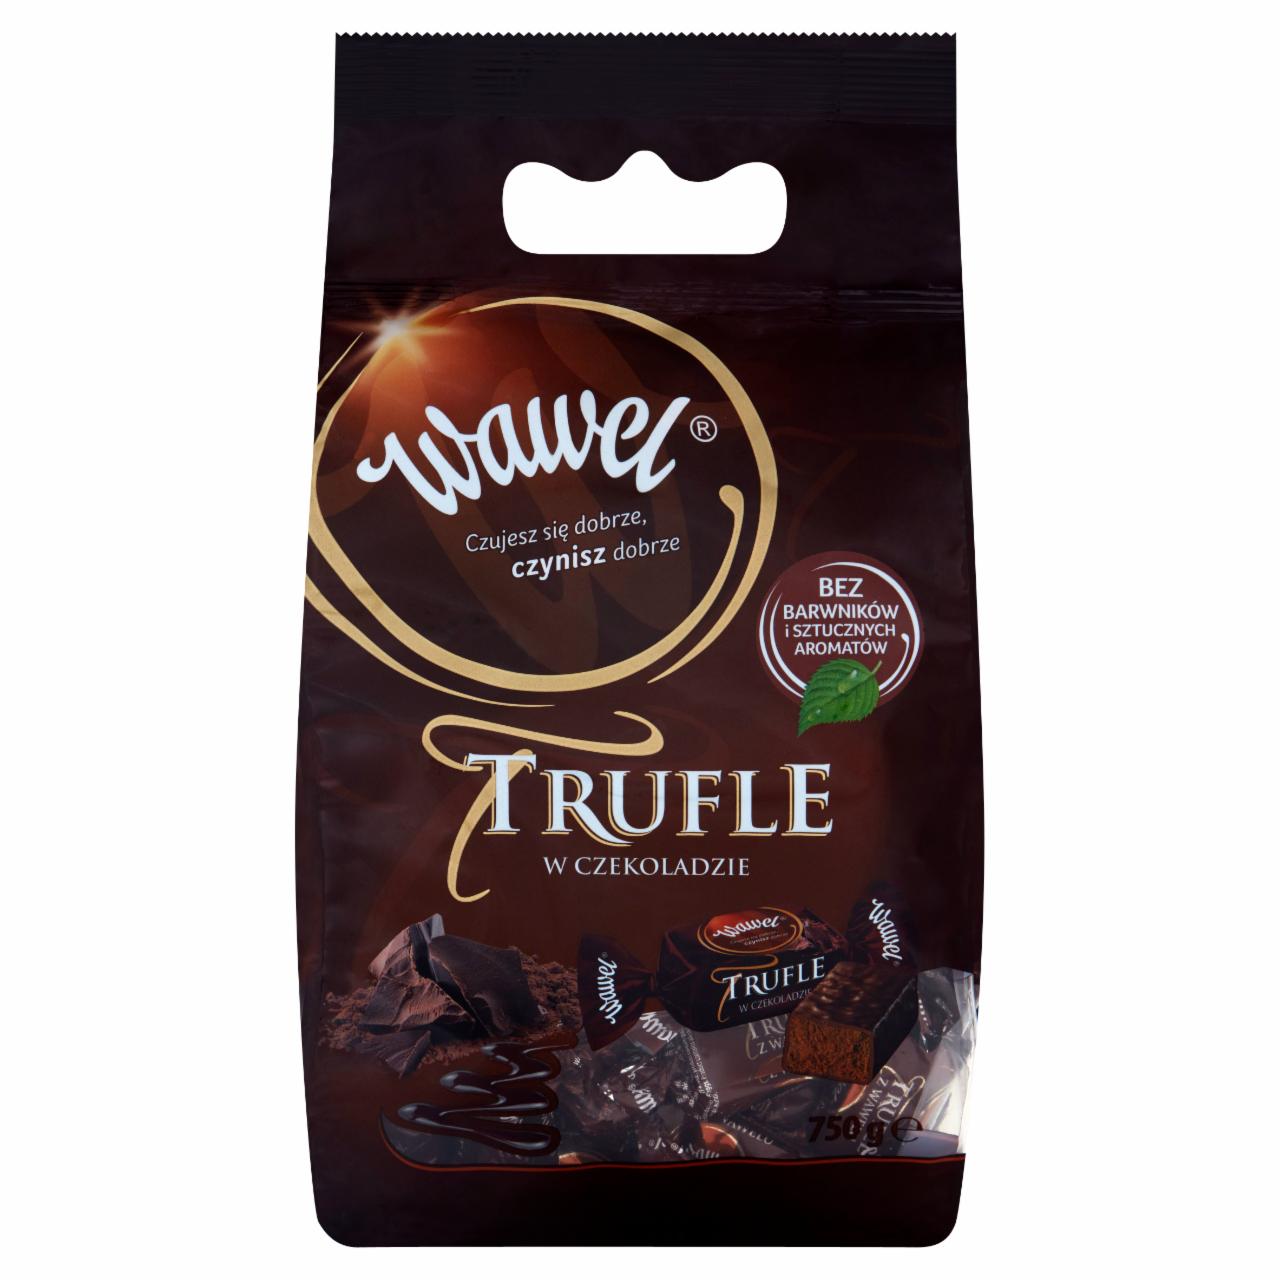 Zdjęcia - Wawel Trufle w czekoladzie Cukierki o smaku rumowym w czekoladzie 750 g